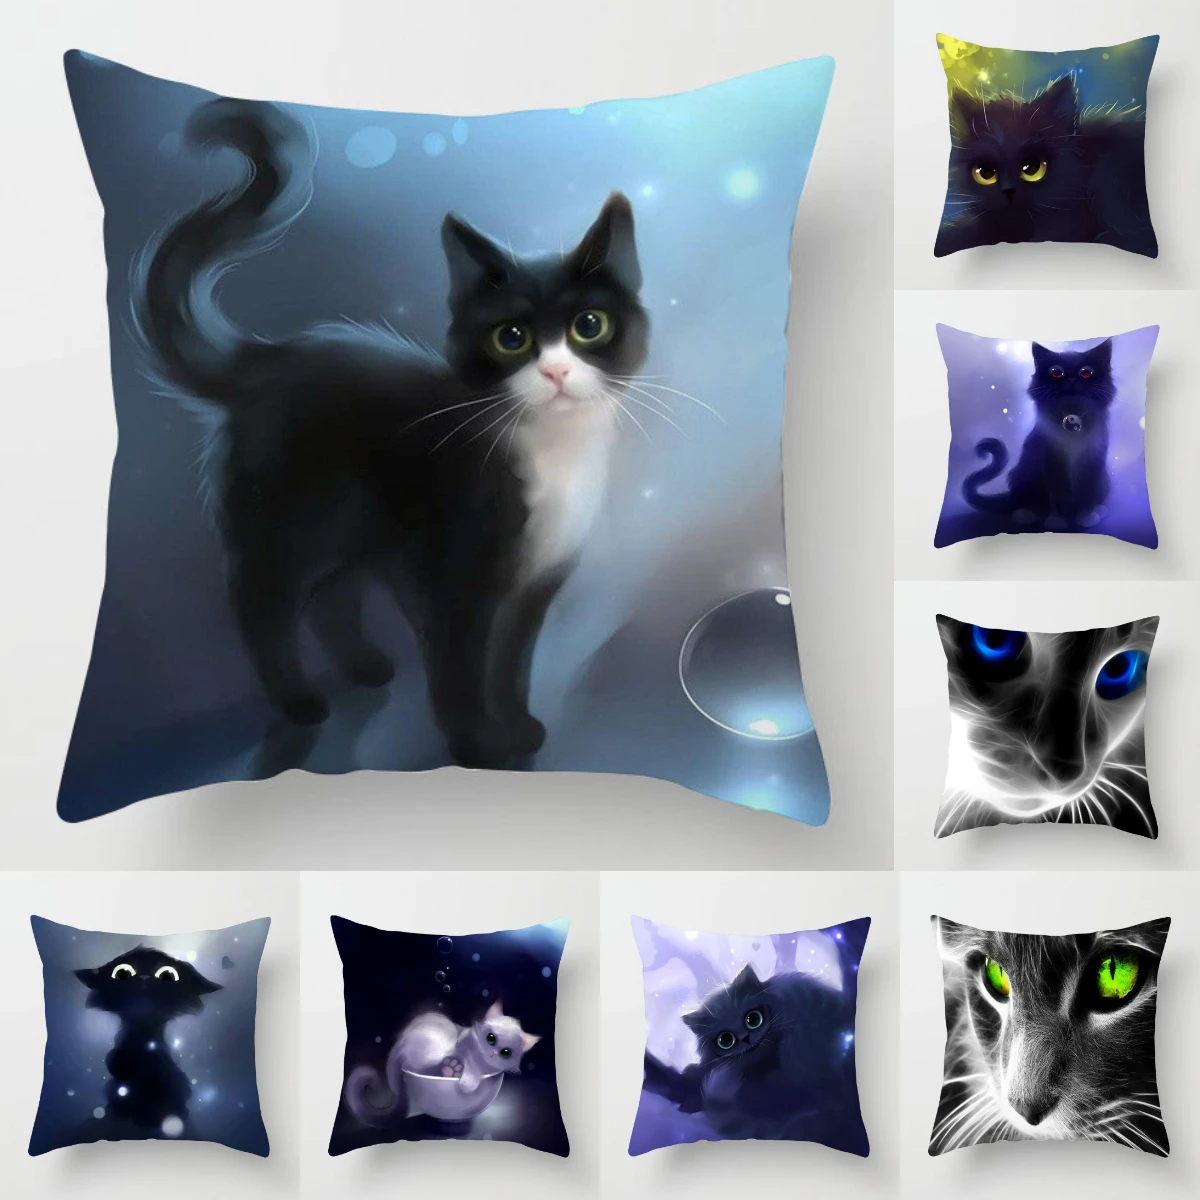 Cover Cushion Sofa Throw Polyester 18" Home Decor Pillow PillowCase Case Animals 